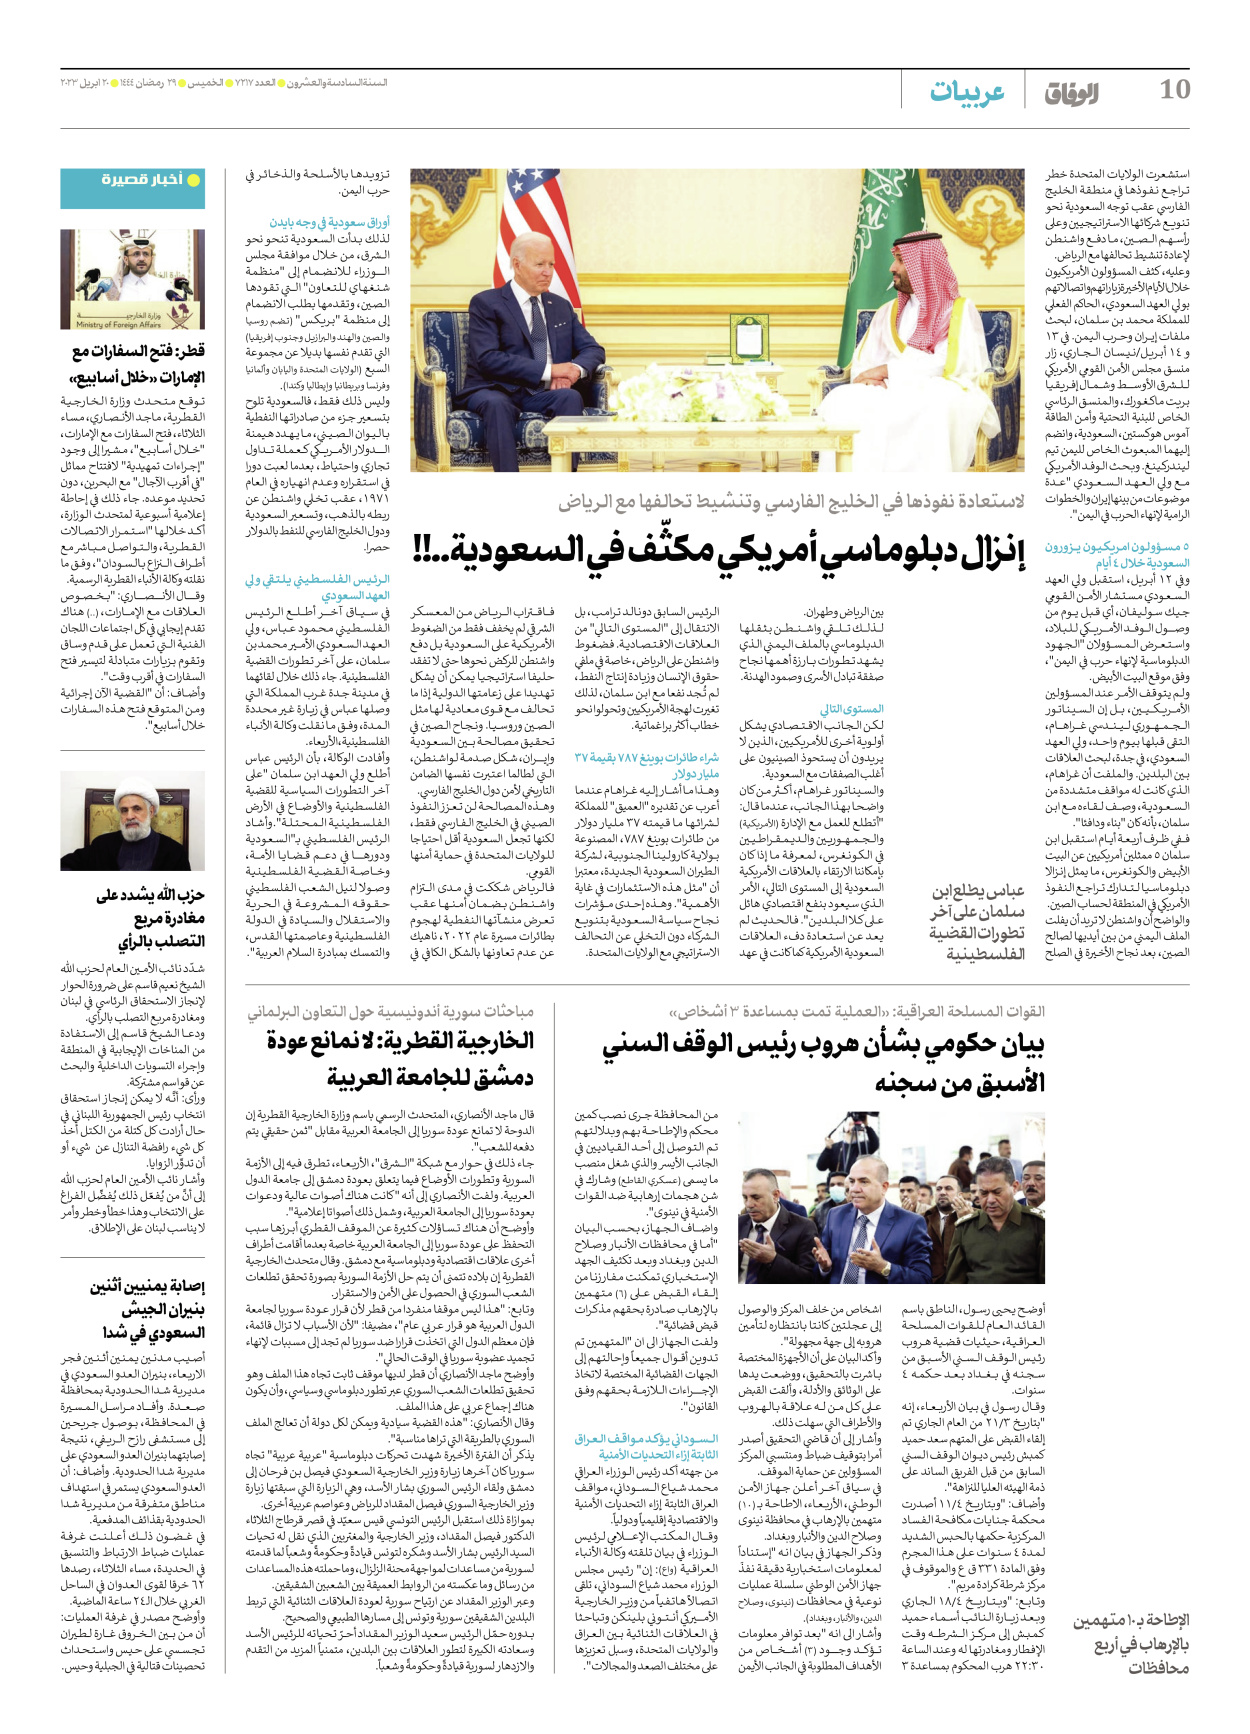 صحیفة ایران الدولیة الوفاق - العدد سبعة آلاف ومائتان وسبعة عشر - ٢٠ أبريل ٢٠٢٣ - الصفحة ۱۰